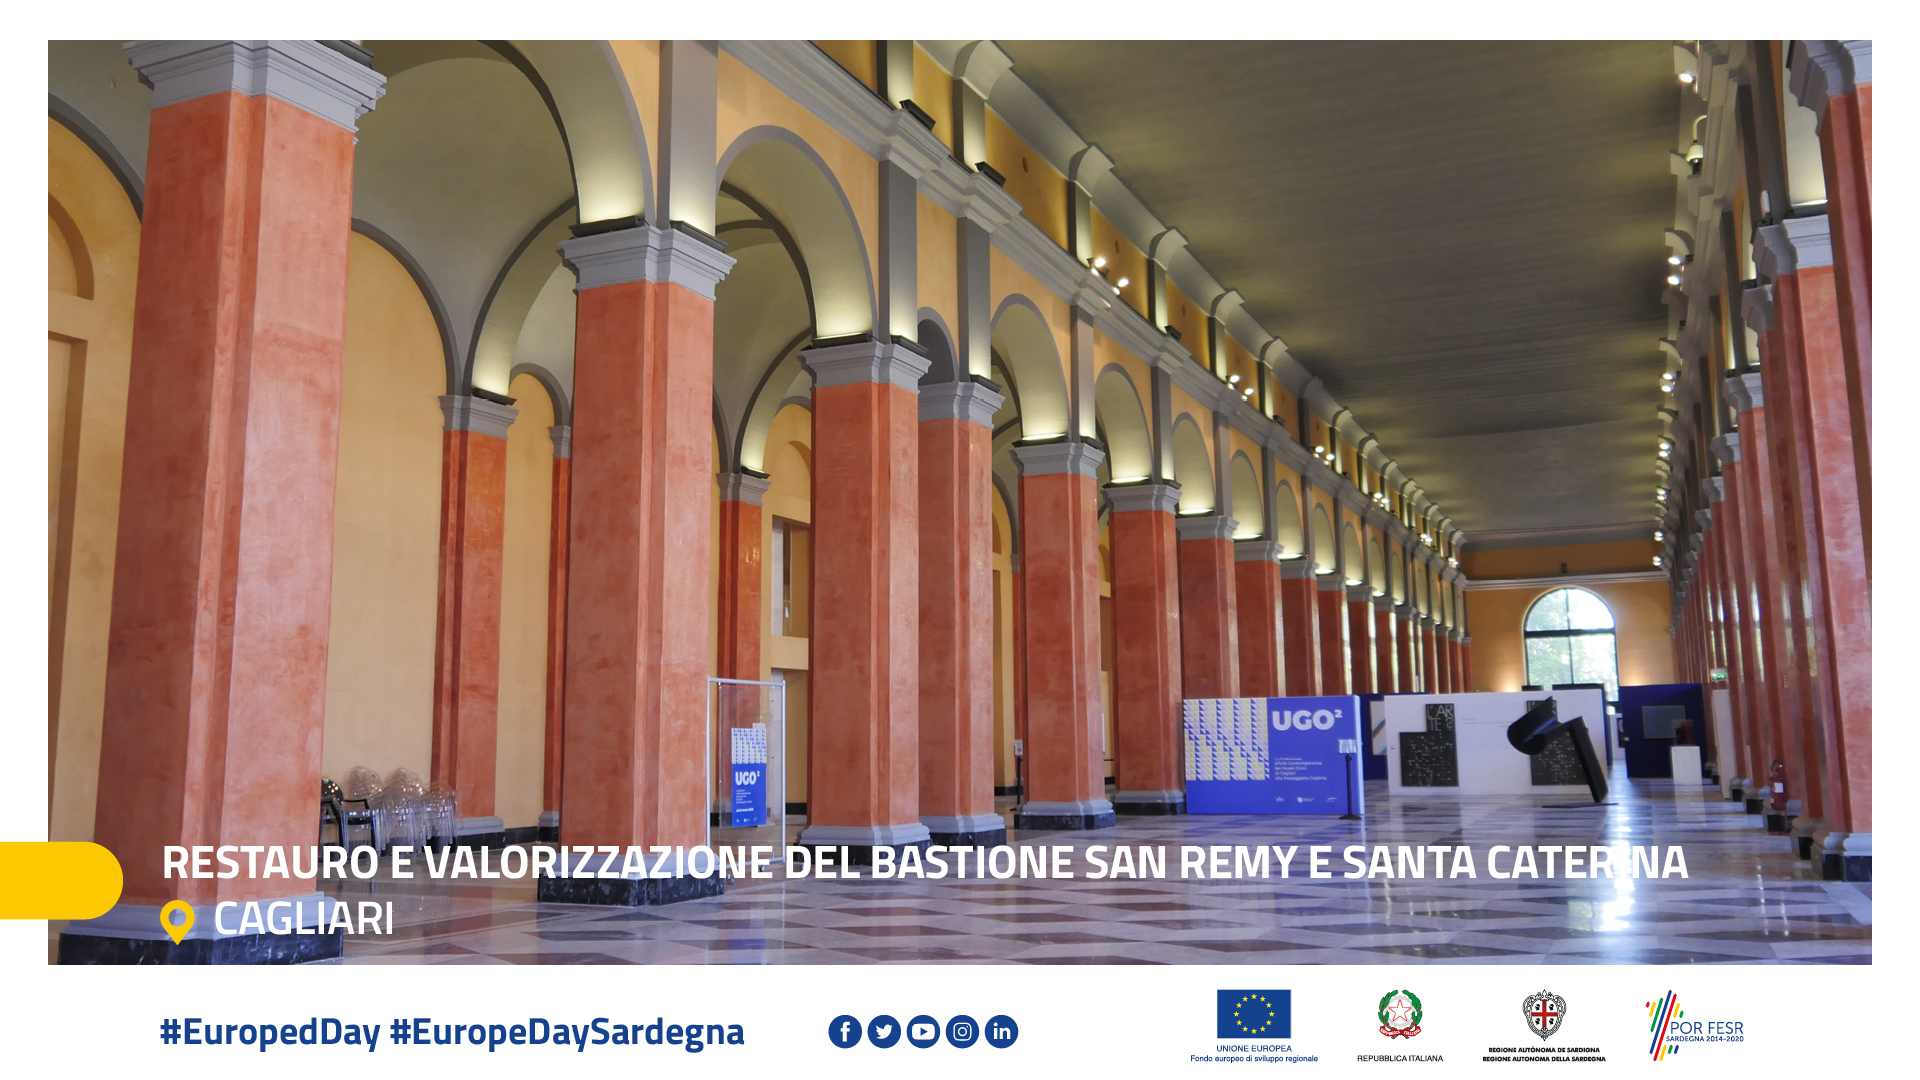 Restauro e valorizzazione del Bastione San Remy e Santa Caterina - Cagliari